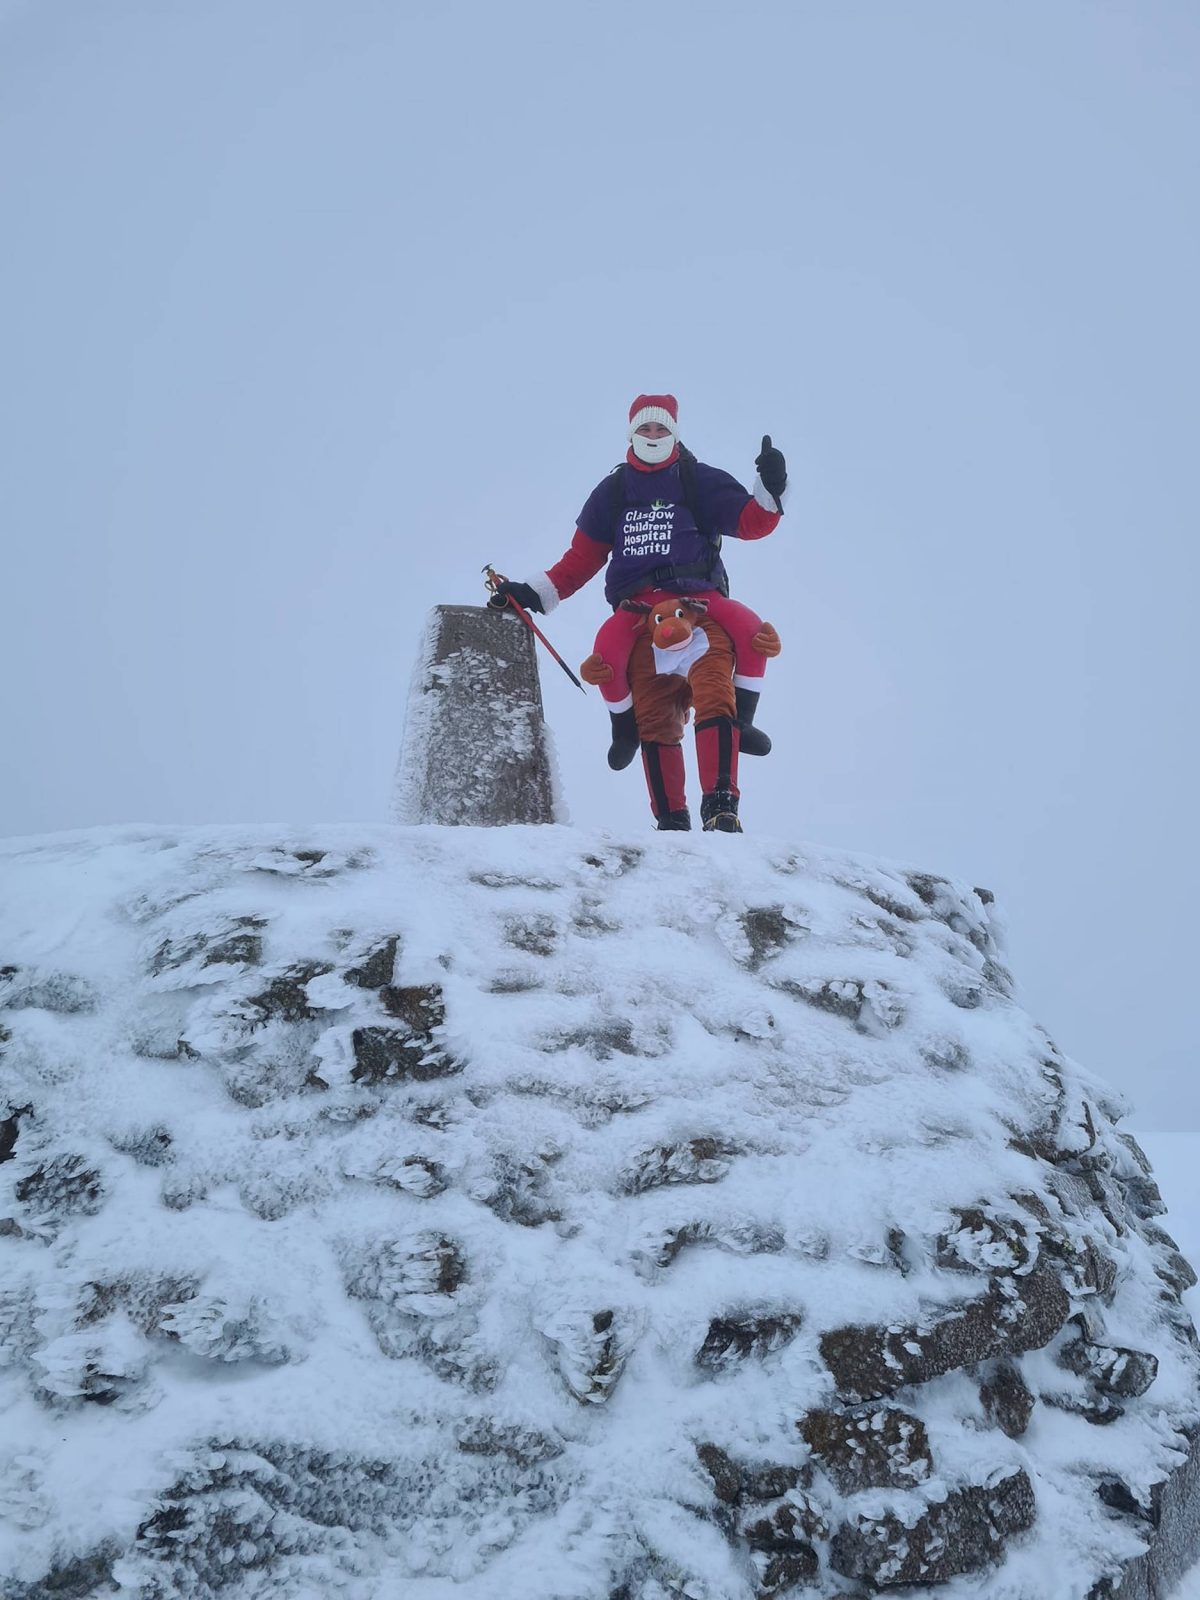 Craig at the summit of Ben Nevis